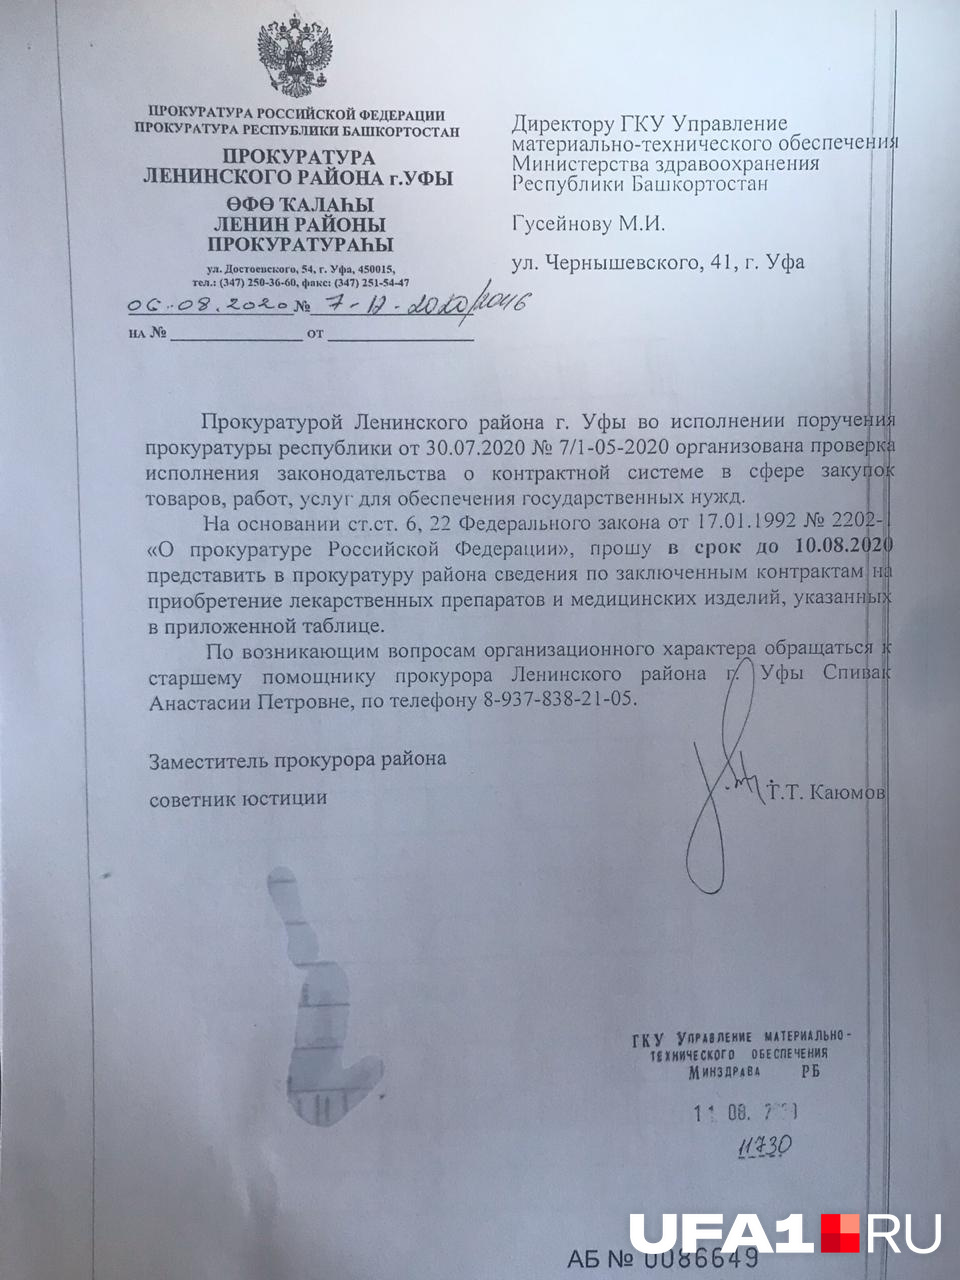 Данный документ прокуратура отправила в Минздрав РБ